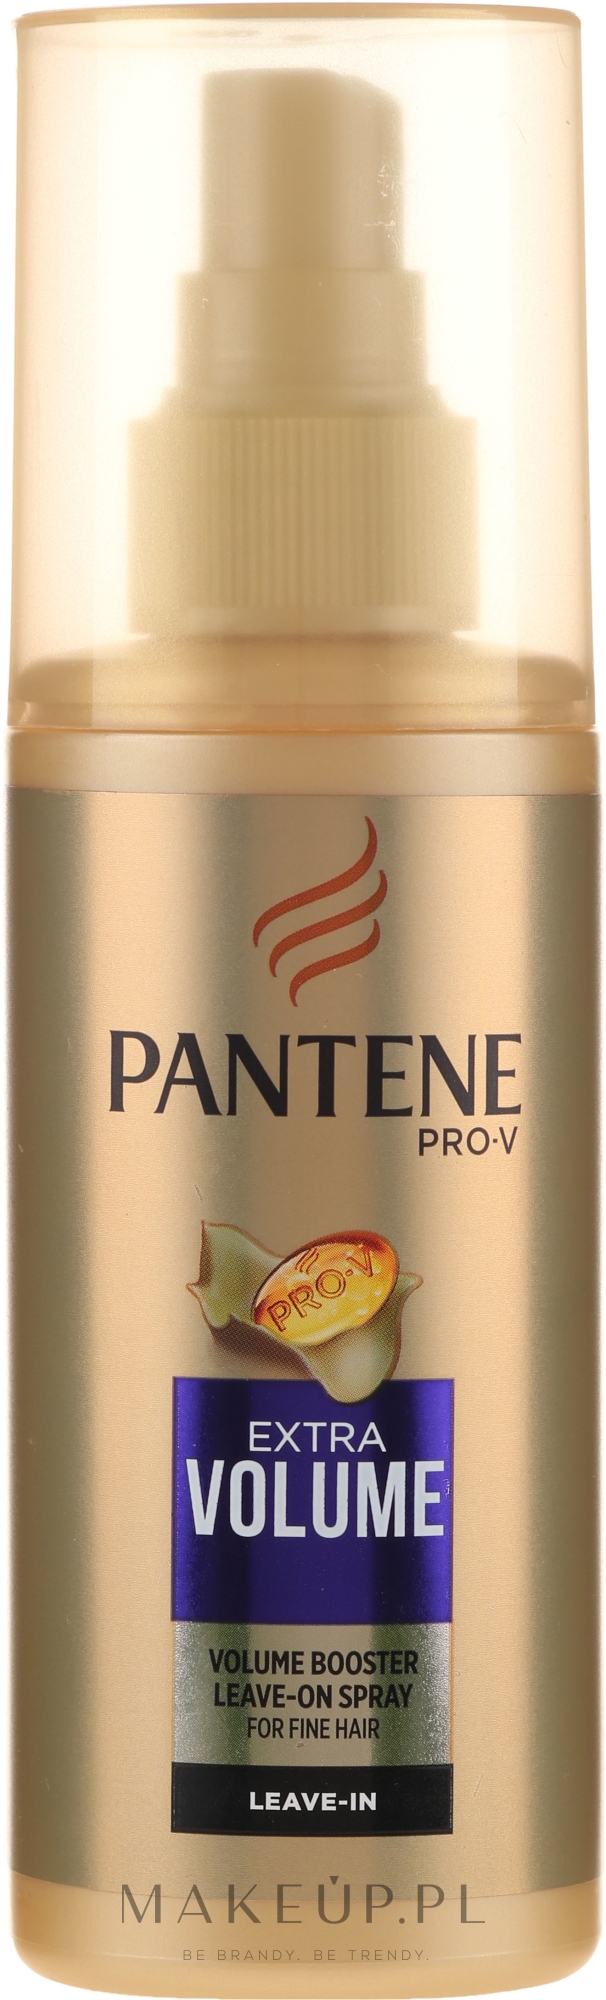 pantene pro-v extra volume odżywka do włosów